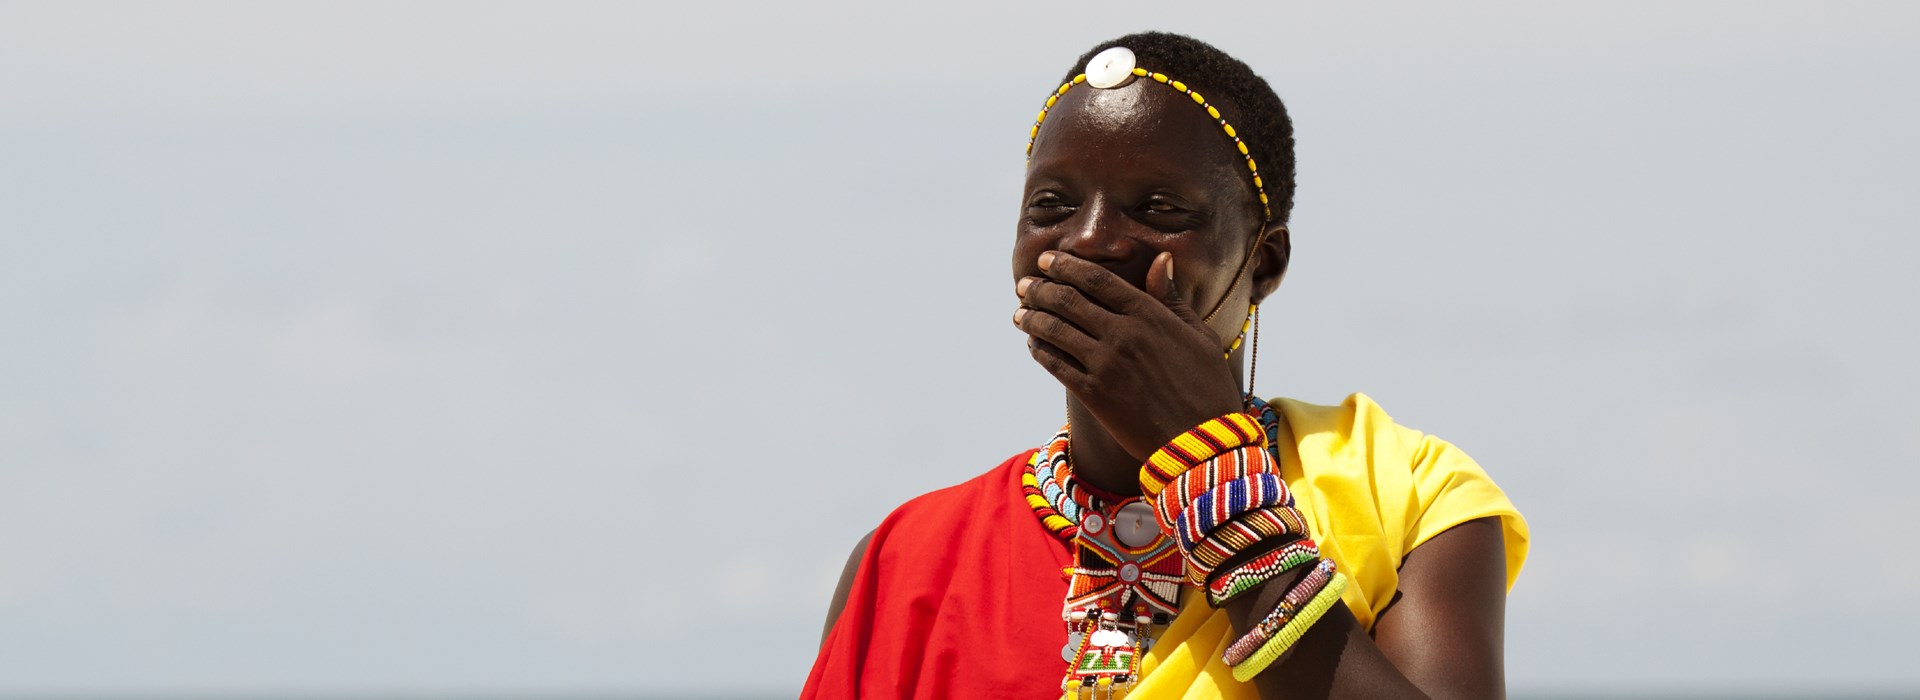 safari tanzanie parent célibataire masai